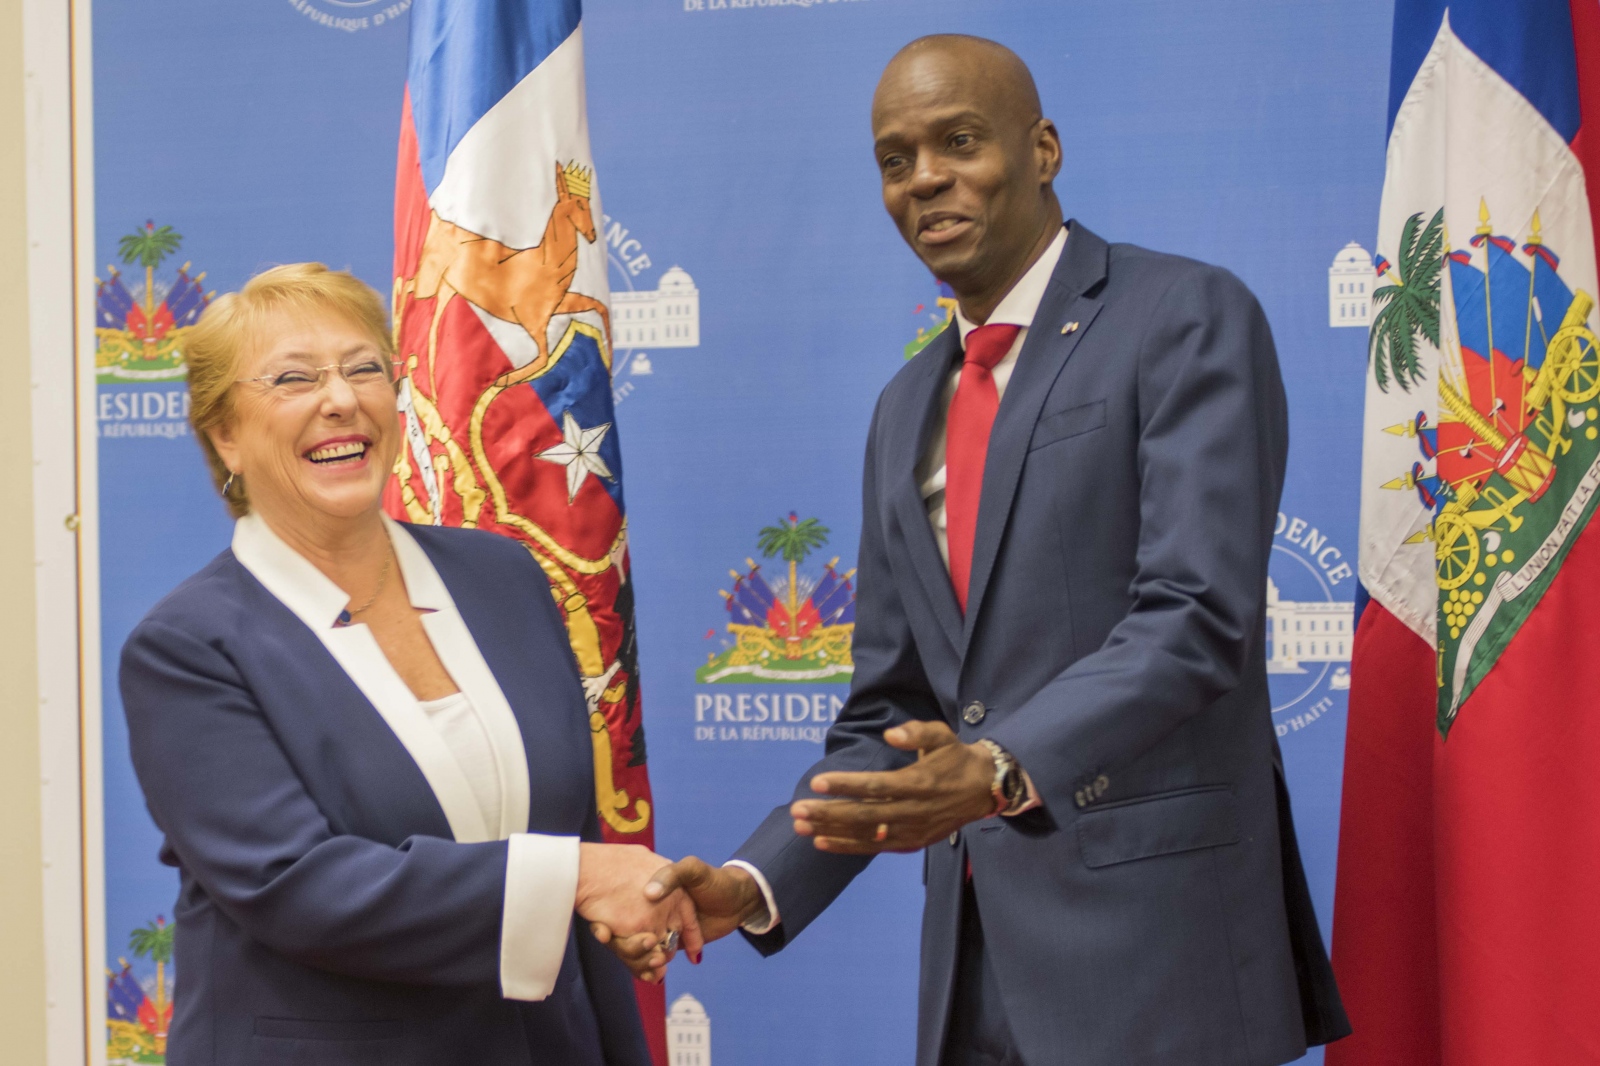 Michelle Bachelet Visite Haiti - ...